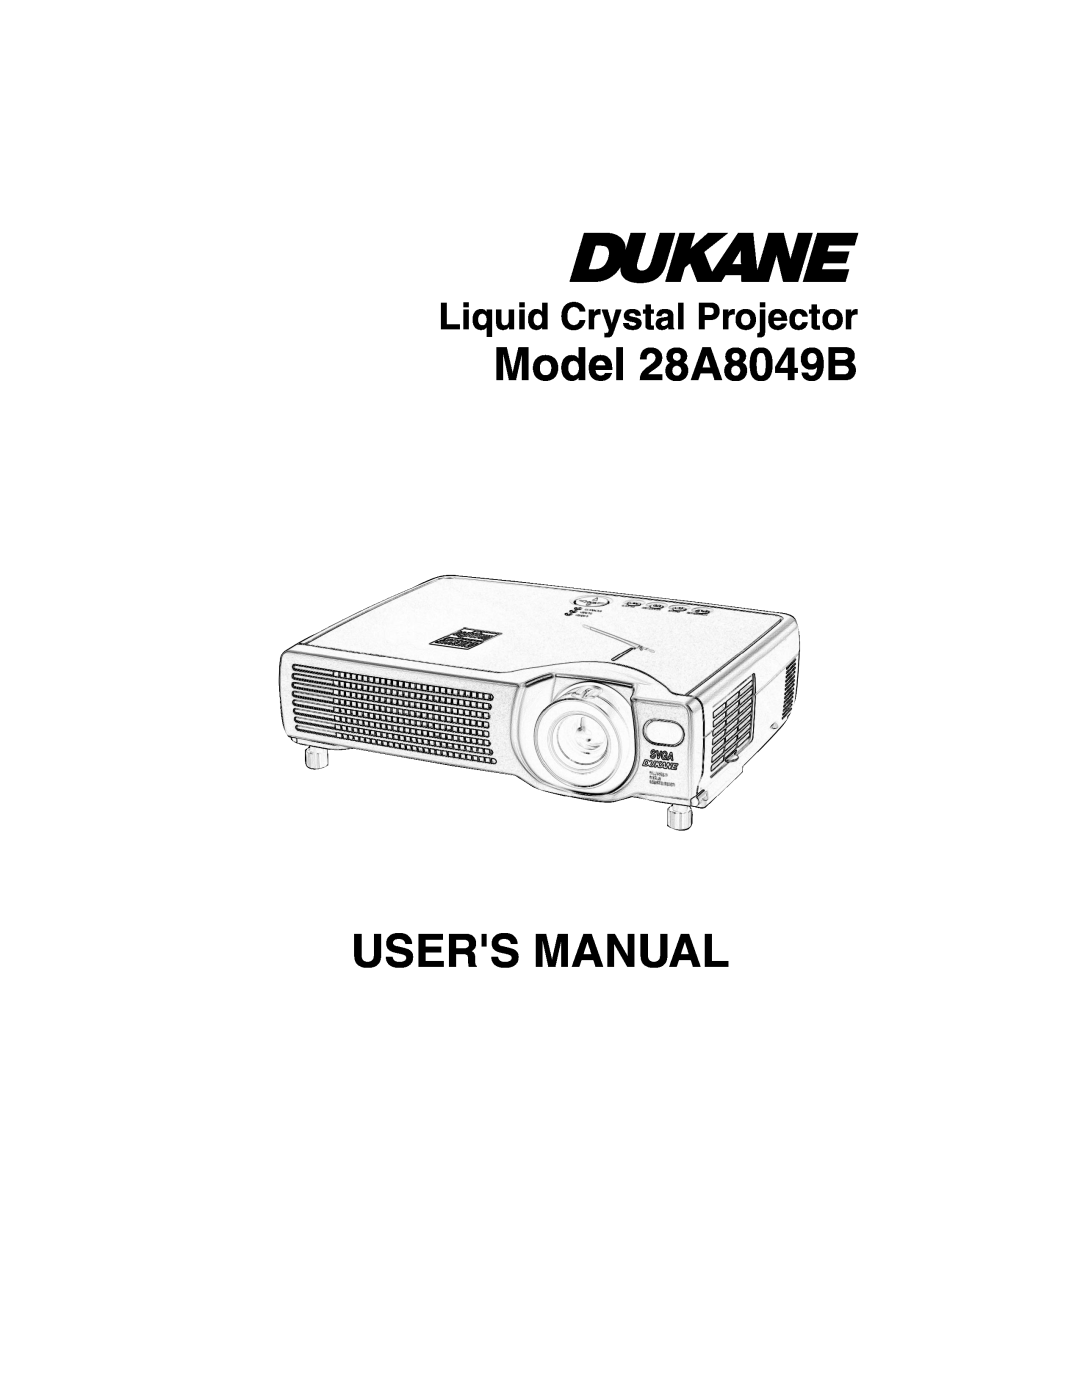 Dukane user manual Model 28A8049B USERS MANUAL, Liquid Crystal Projector 